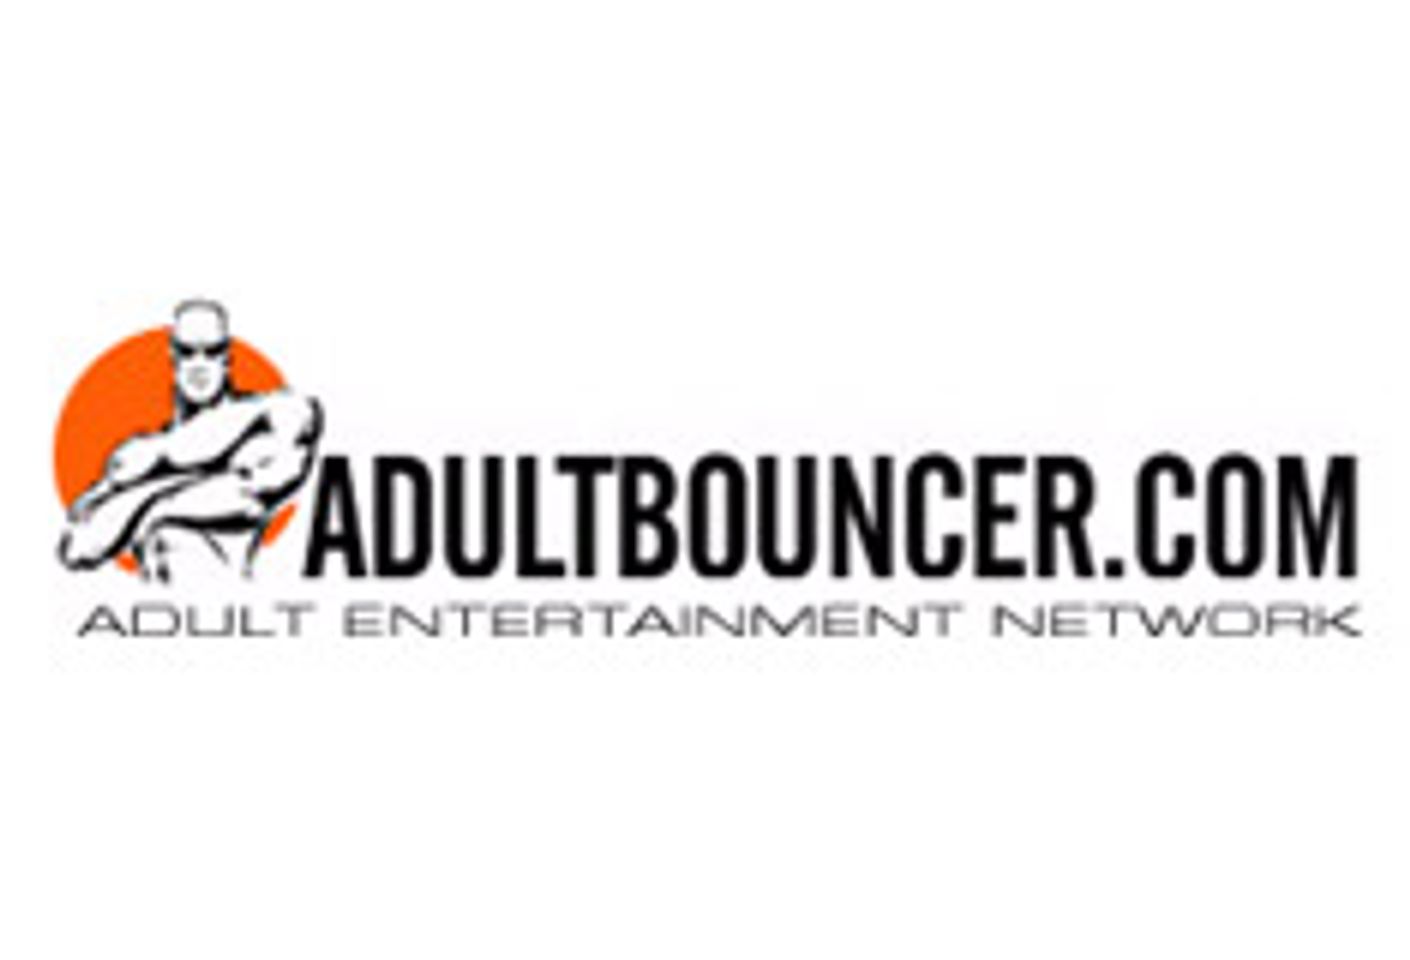 Adult Bouncer Delivers ePassporte